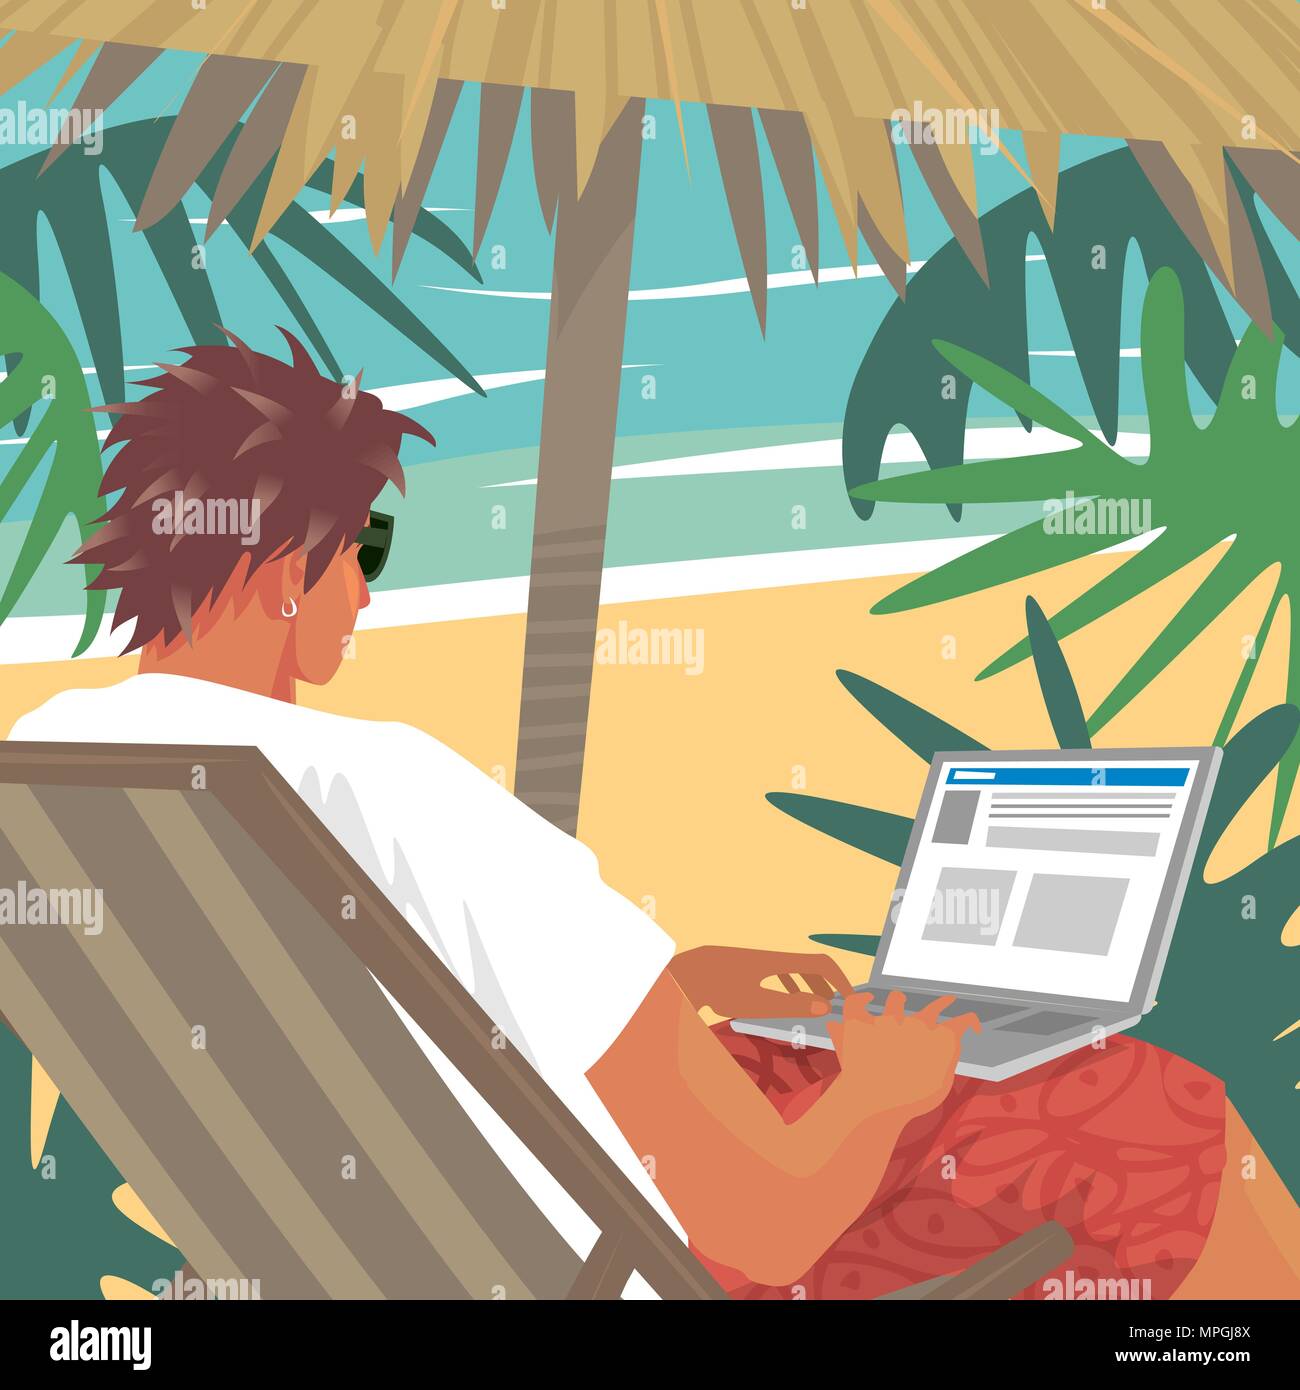 Jeune homme occupé à travailler sur ordinateur portable ou de poche, assis dans une chaise longue sur la plage tropicale à côté de l'océan. Offres de concept. L'art de la bande dessinée réaliste simpliste Illustration de Vecteur